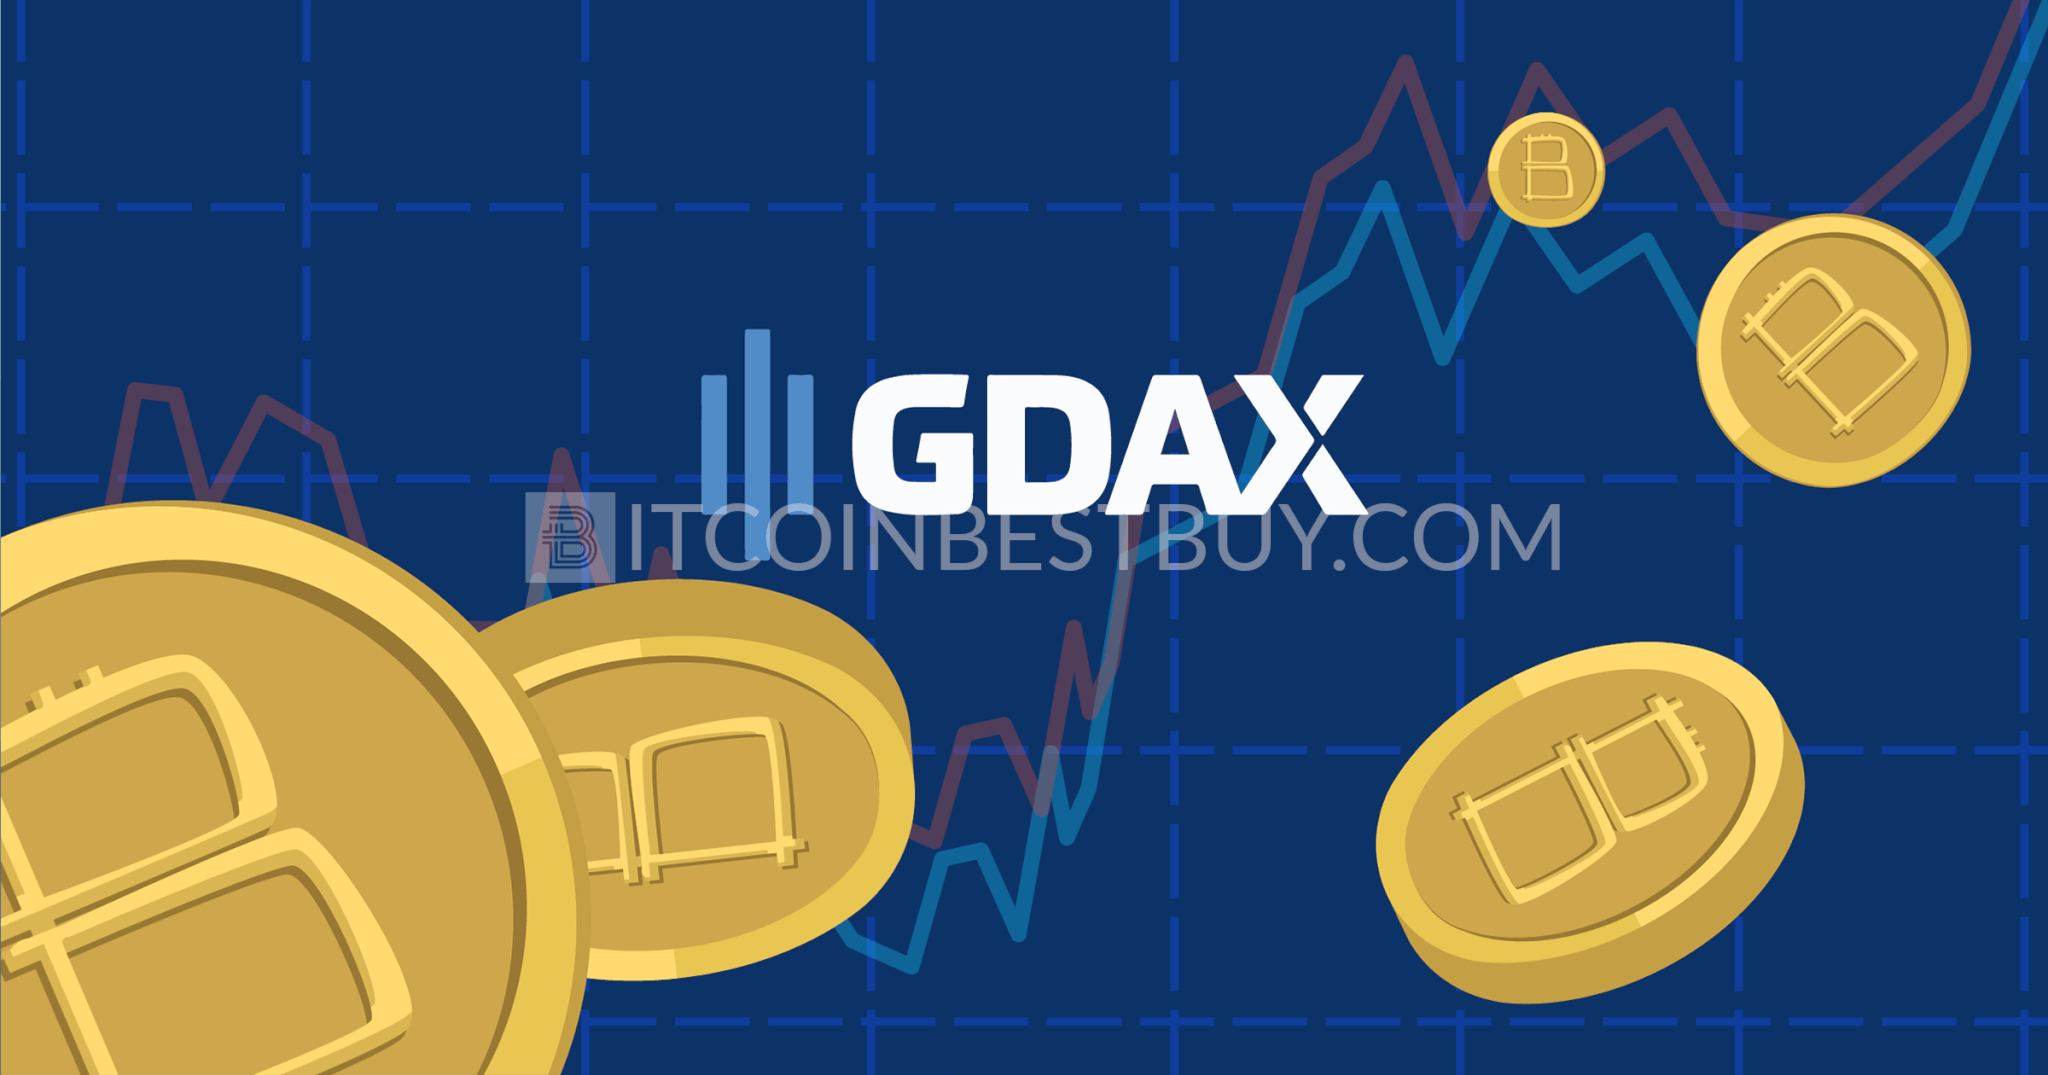 Peržiūrėkite GDAX bitcoin mainus